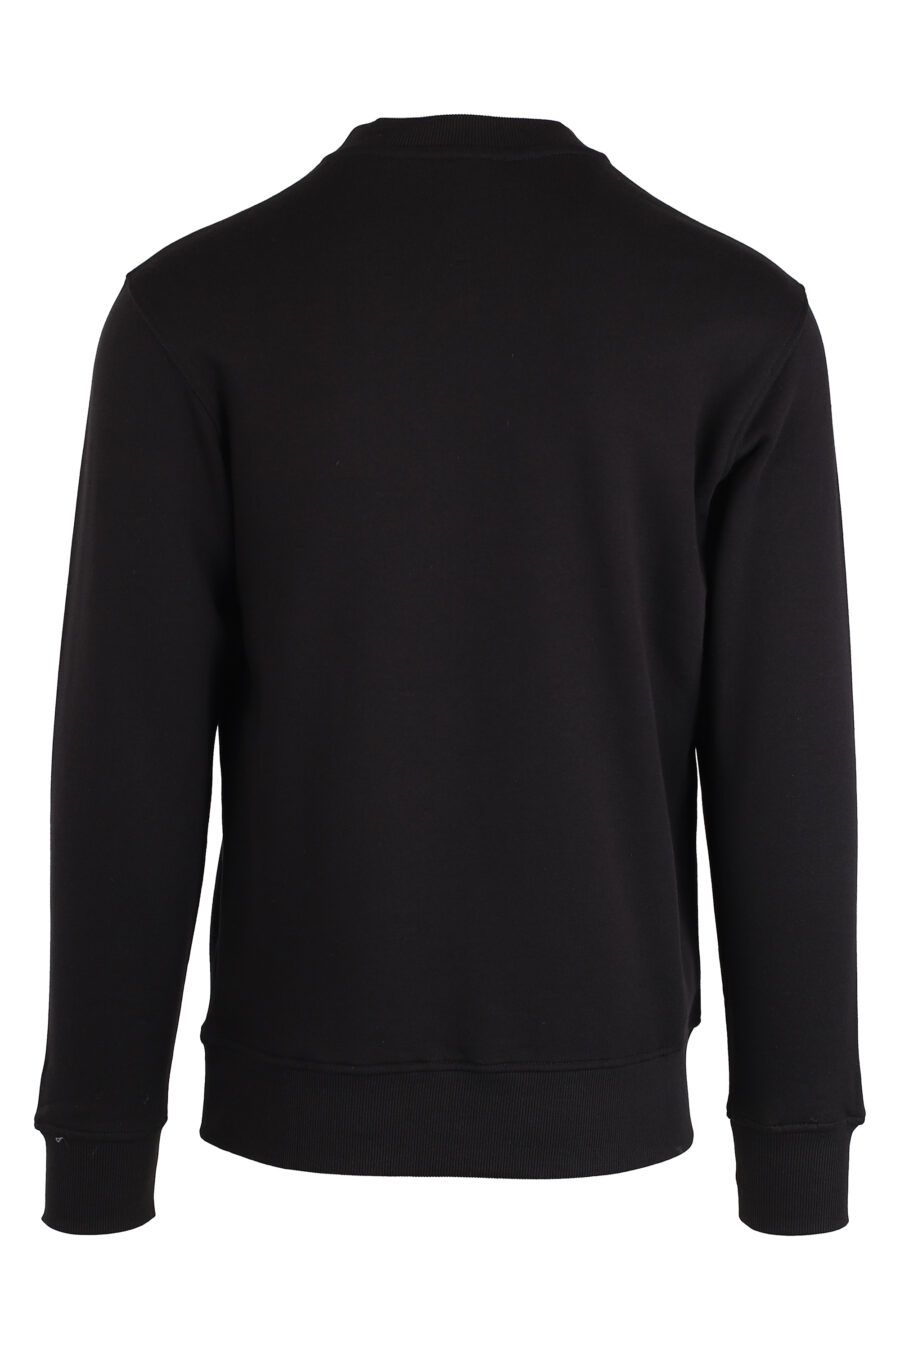 Schwarzes Sweatshirt mit silbernem Stempel-Logo - IMG 4143